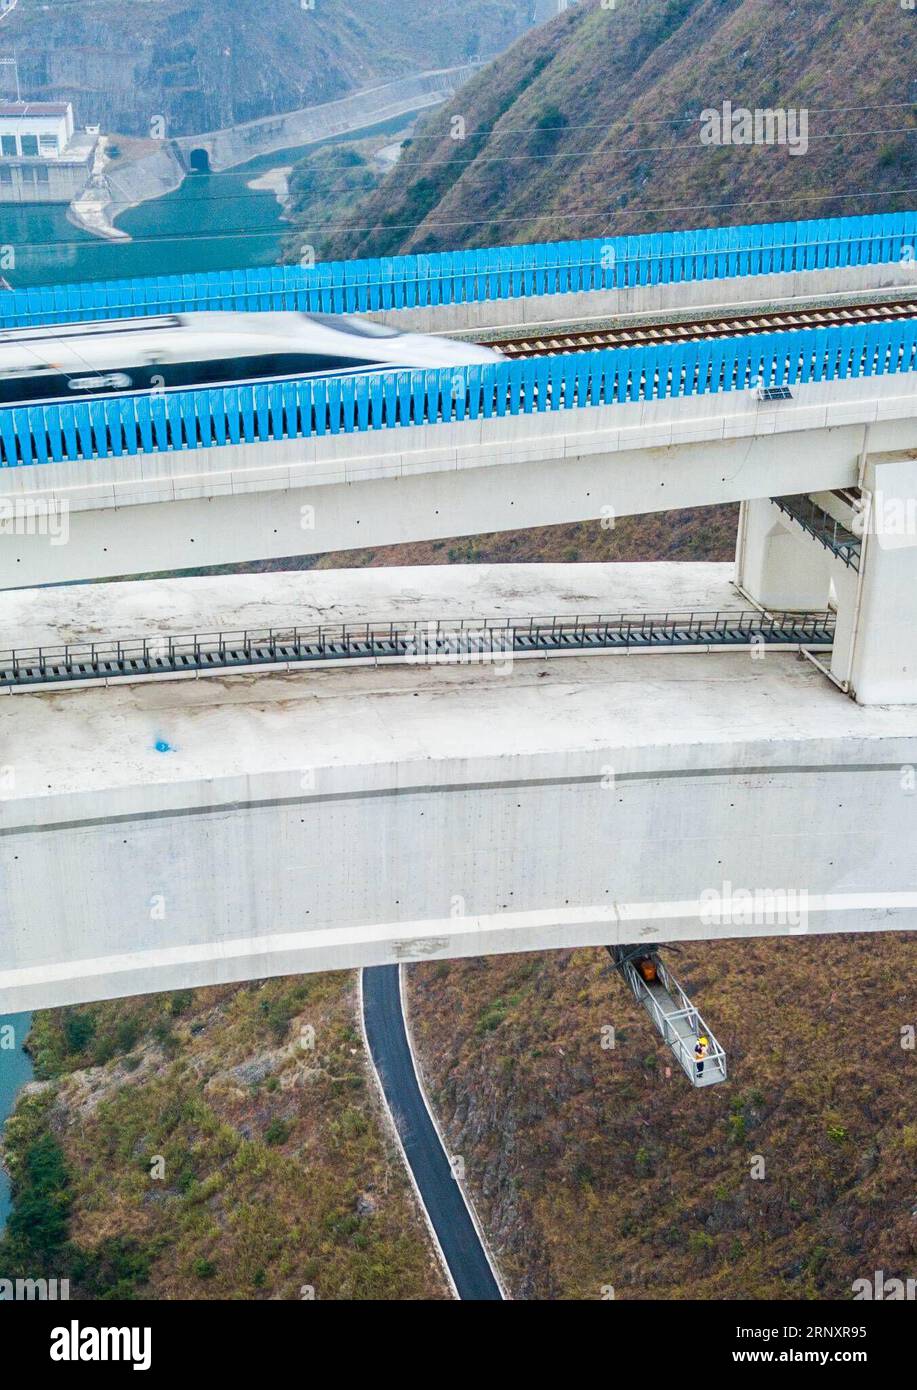 (180210) -- GUIYANG, 10. Februar 2018 -- Brückenpfleger arbeiten unter dem Bogen der Beipanjiang-Eisenbahnbrücke in der südwestchinesischen Provinz Guizhou, 26. Januar 2018. Die 721 Meter lange Hochgeschwindigkeitsbahnbrücke ist Teil der Hochgeschwindigkeitsbahnstrecke Shanghai-Kunming, die die wohlhabende Ostküste des Landes mit dem weniger entwickelten Südwesten verbindet. Instandhaltungsarbeiter untersuchen die Brücke täglich, um die Sicherheit der Eisenbahnstrecke zu gewährleisten. ) (Zkr) CHINA-GUIZHOU-BRIDGE MAINTENANCE(CN) LiuxXu PUBLICATIONxNOTxINxCHN Stockfoto